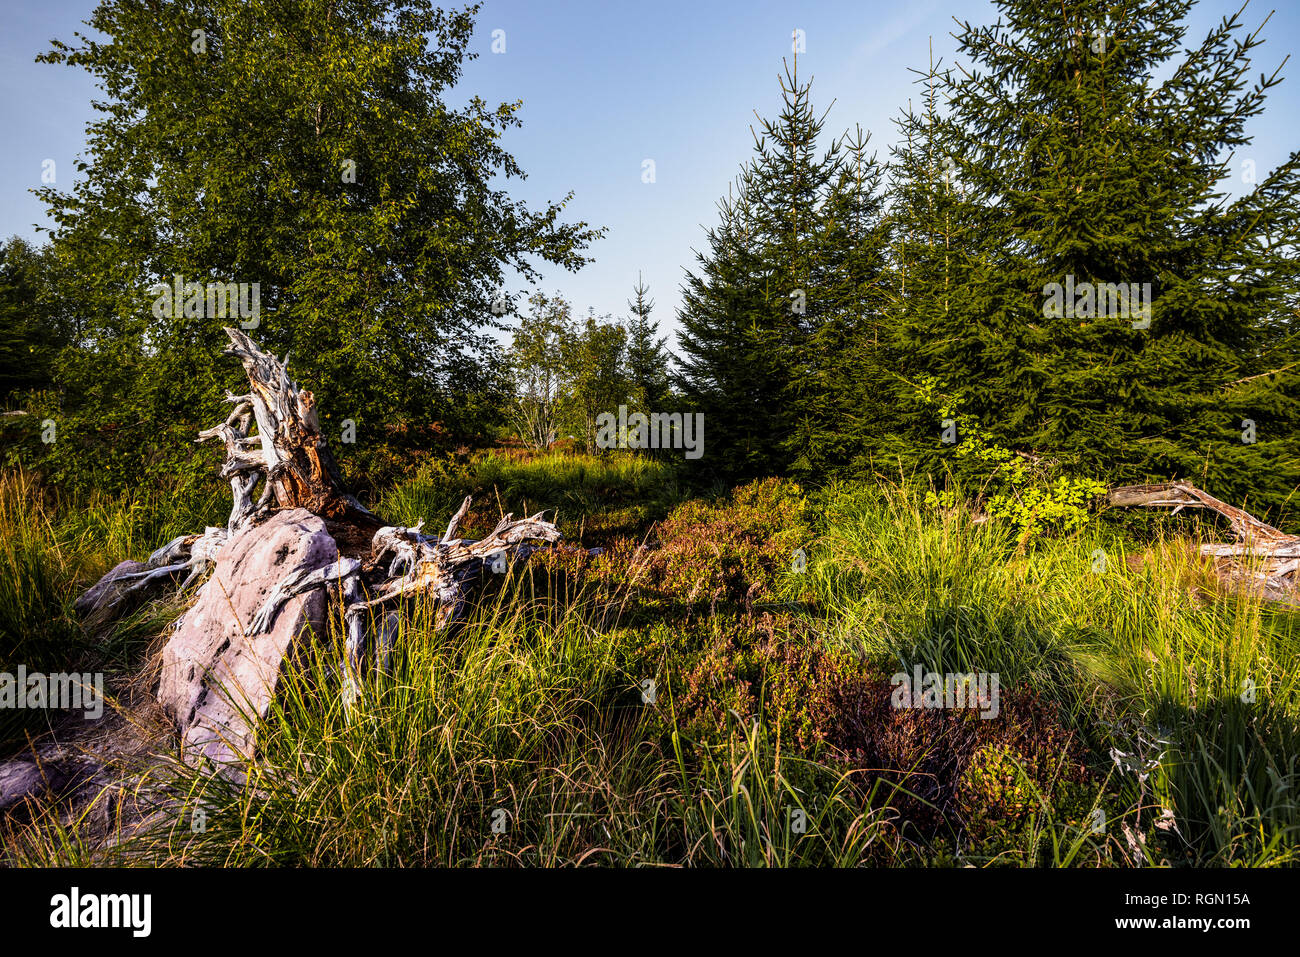 Le grès et le paysage de l'habitat du Nord, chablis intacte de la Forêt Noire, Allemagne Banque D'Images